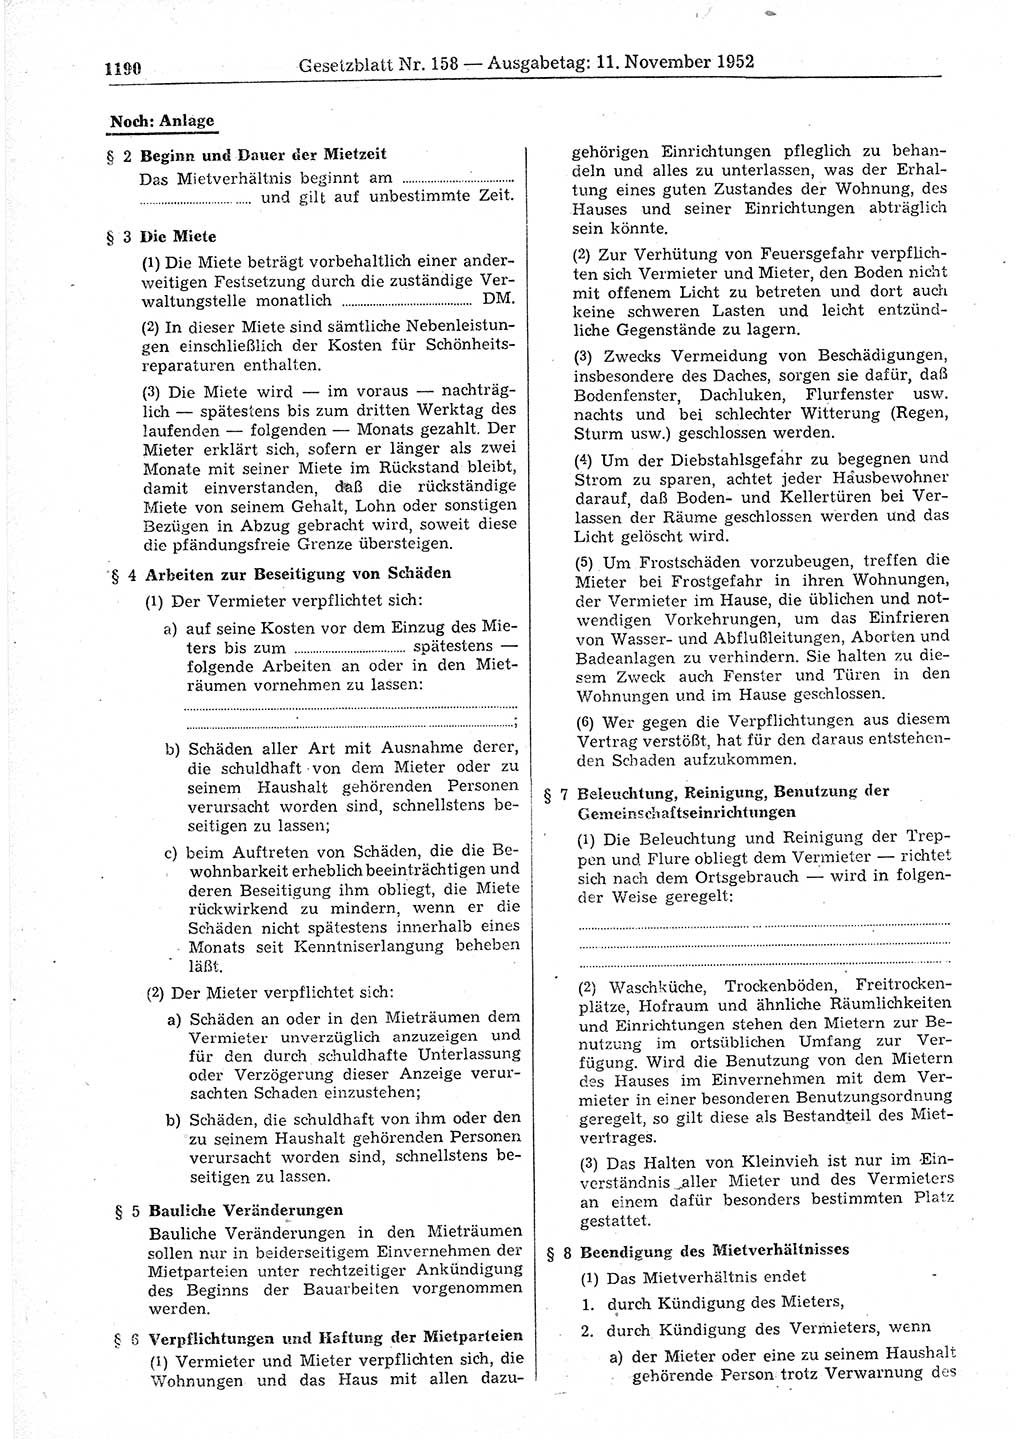 Gesetzblatt (GBl.) der Deutschen Demokratischen Republik (DDR) 1952, Seite 1190 (GBl. DDR 1952, S. 1190)